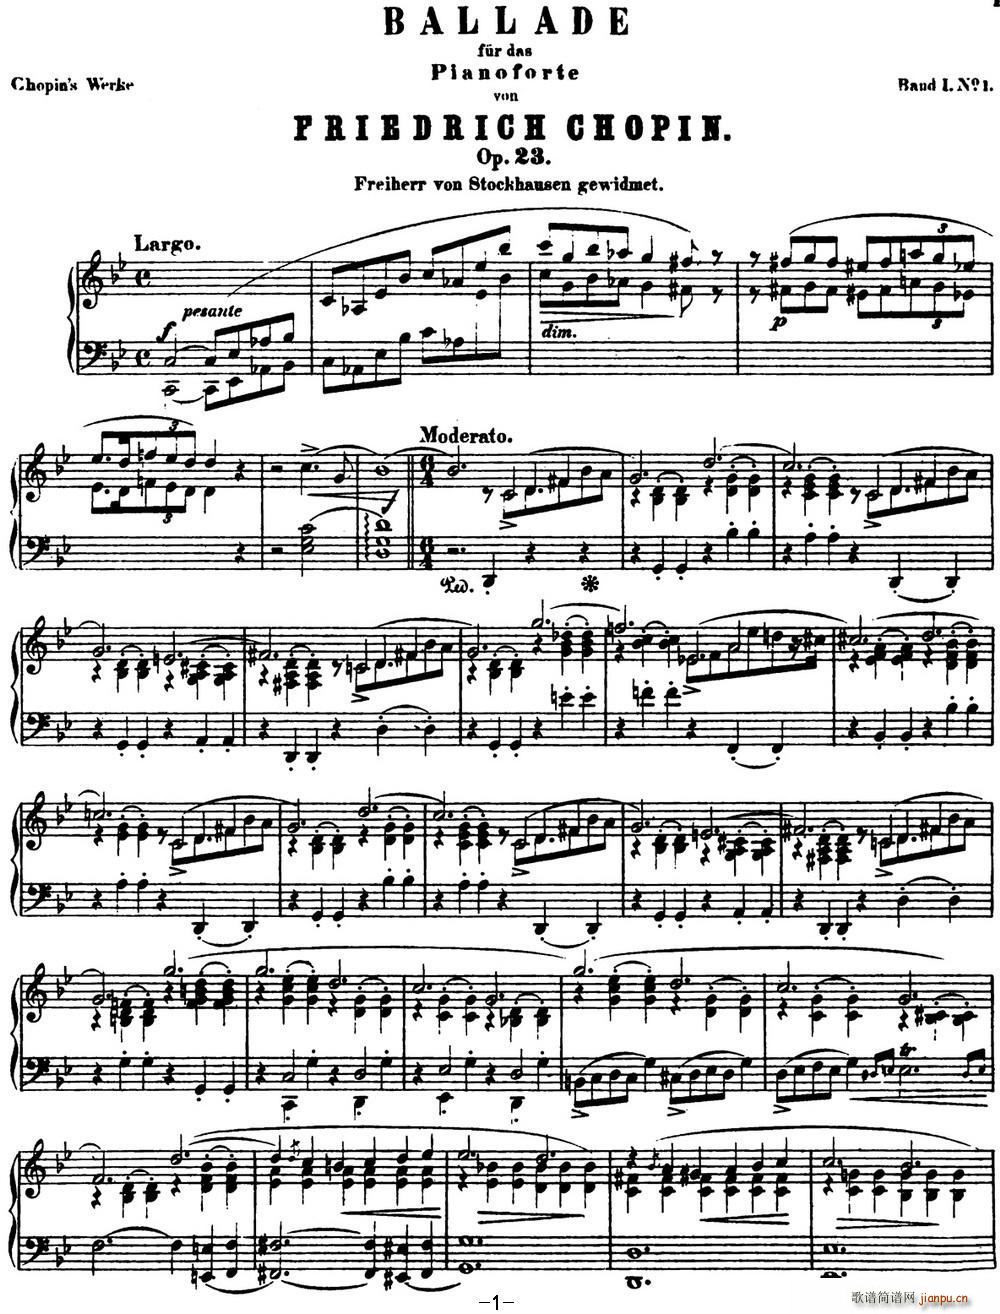 Ф 1 gС Chopin Ballade No 1 Op 23()1